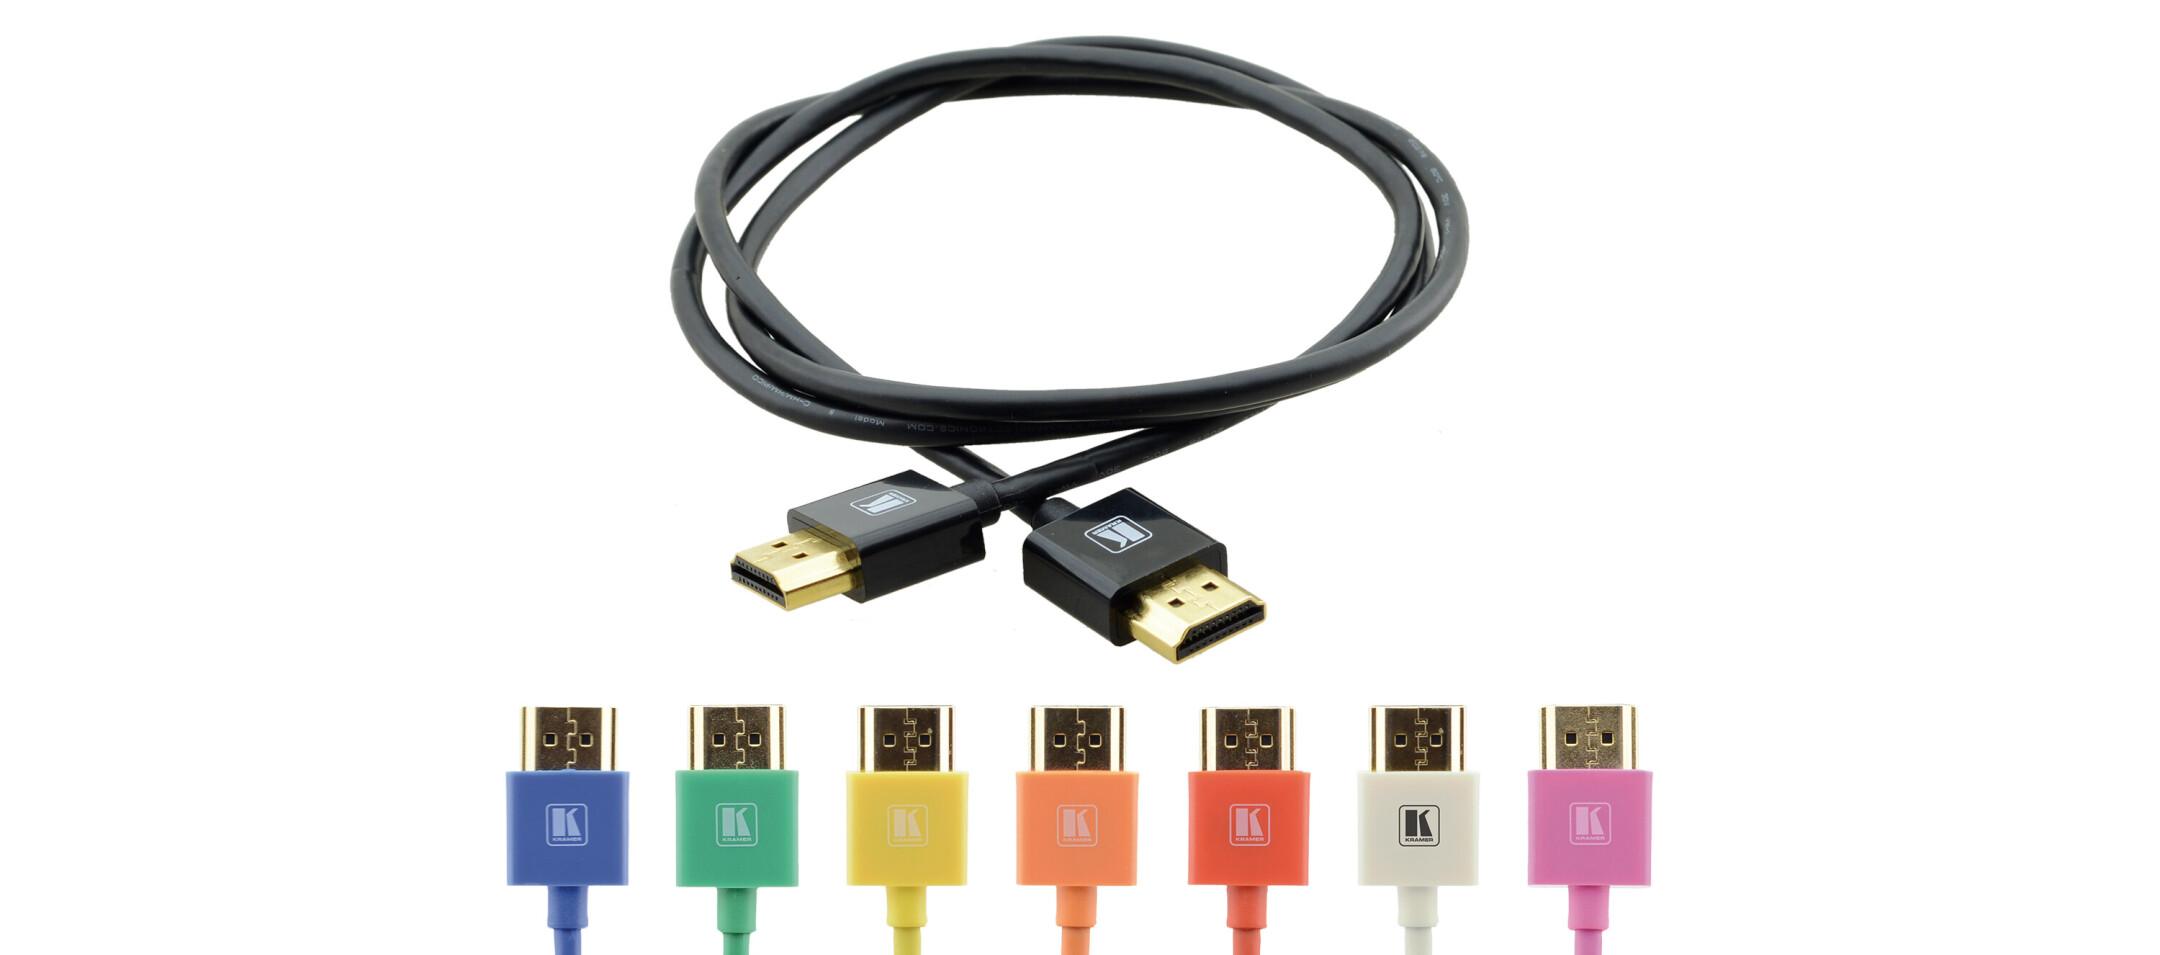 Kramer-High-Speed-HDMI-Kabel-mit-Ethernet-1-80-m-schwarz